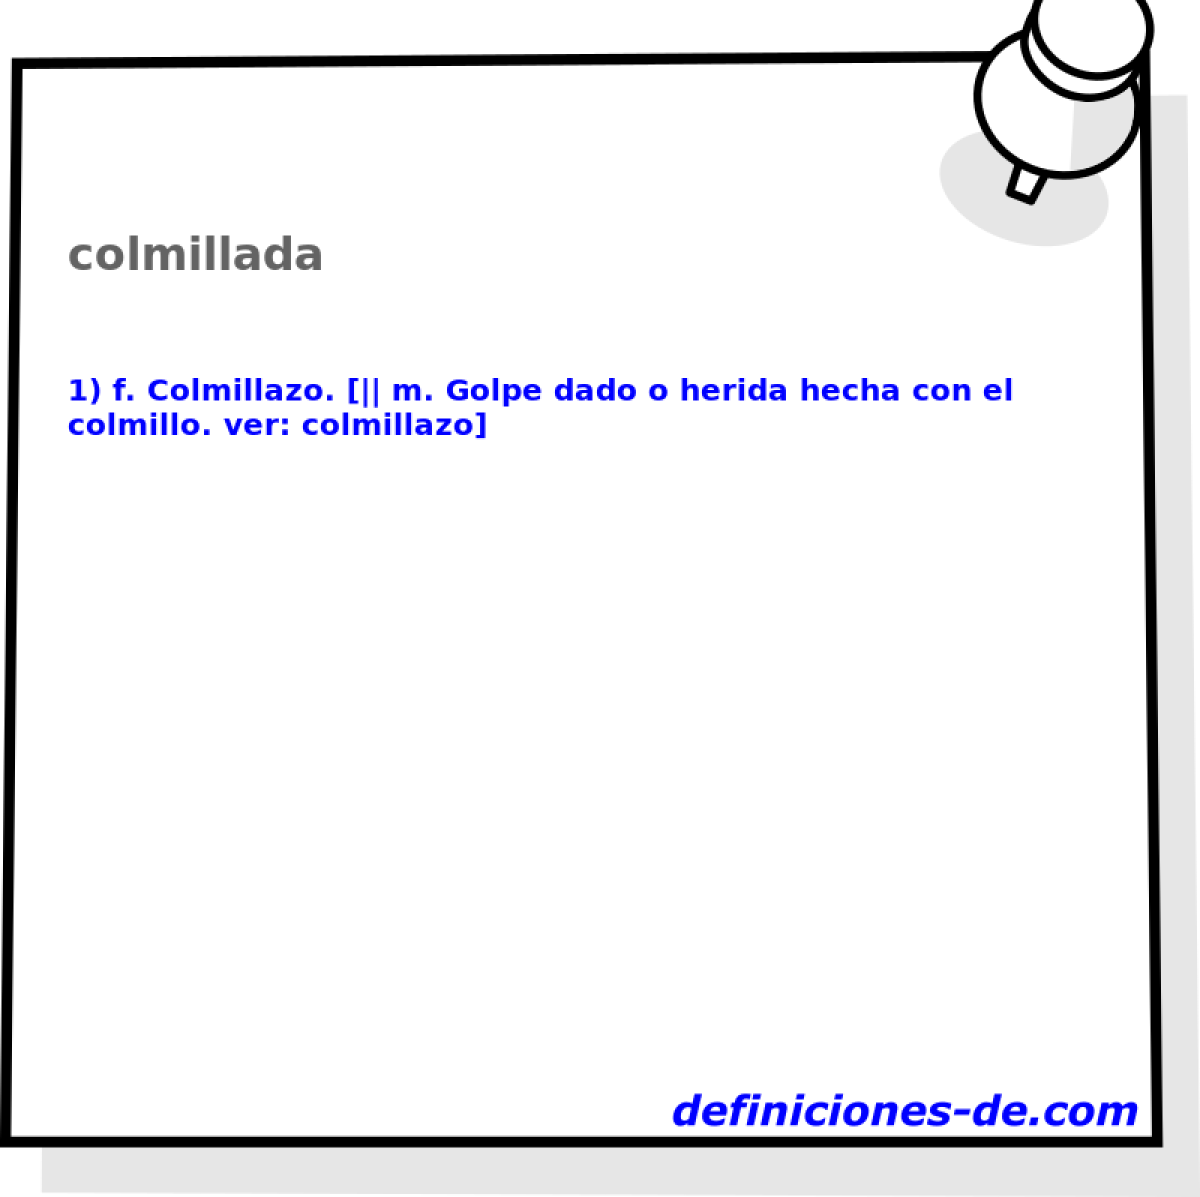 colmillada 